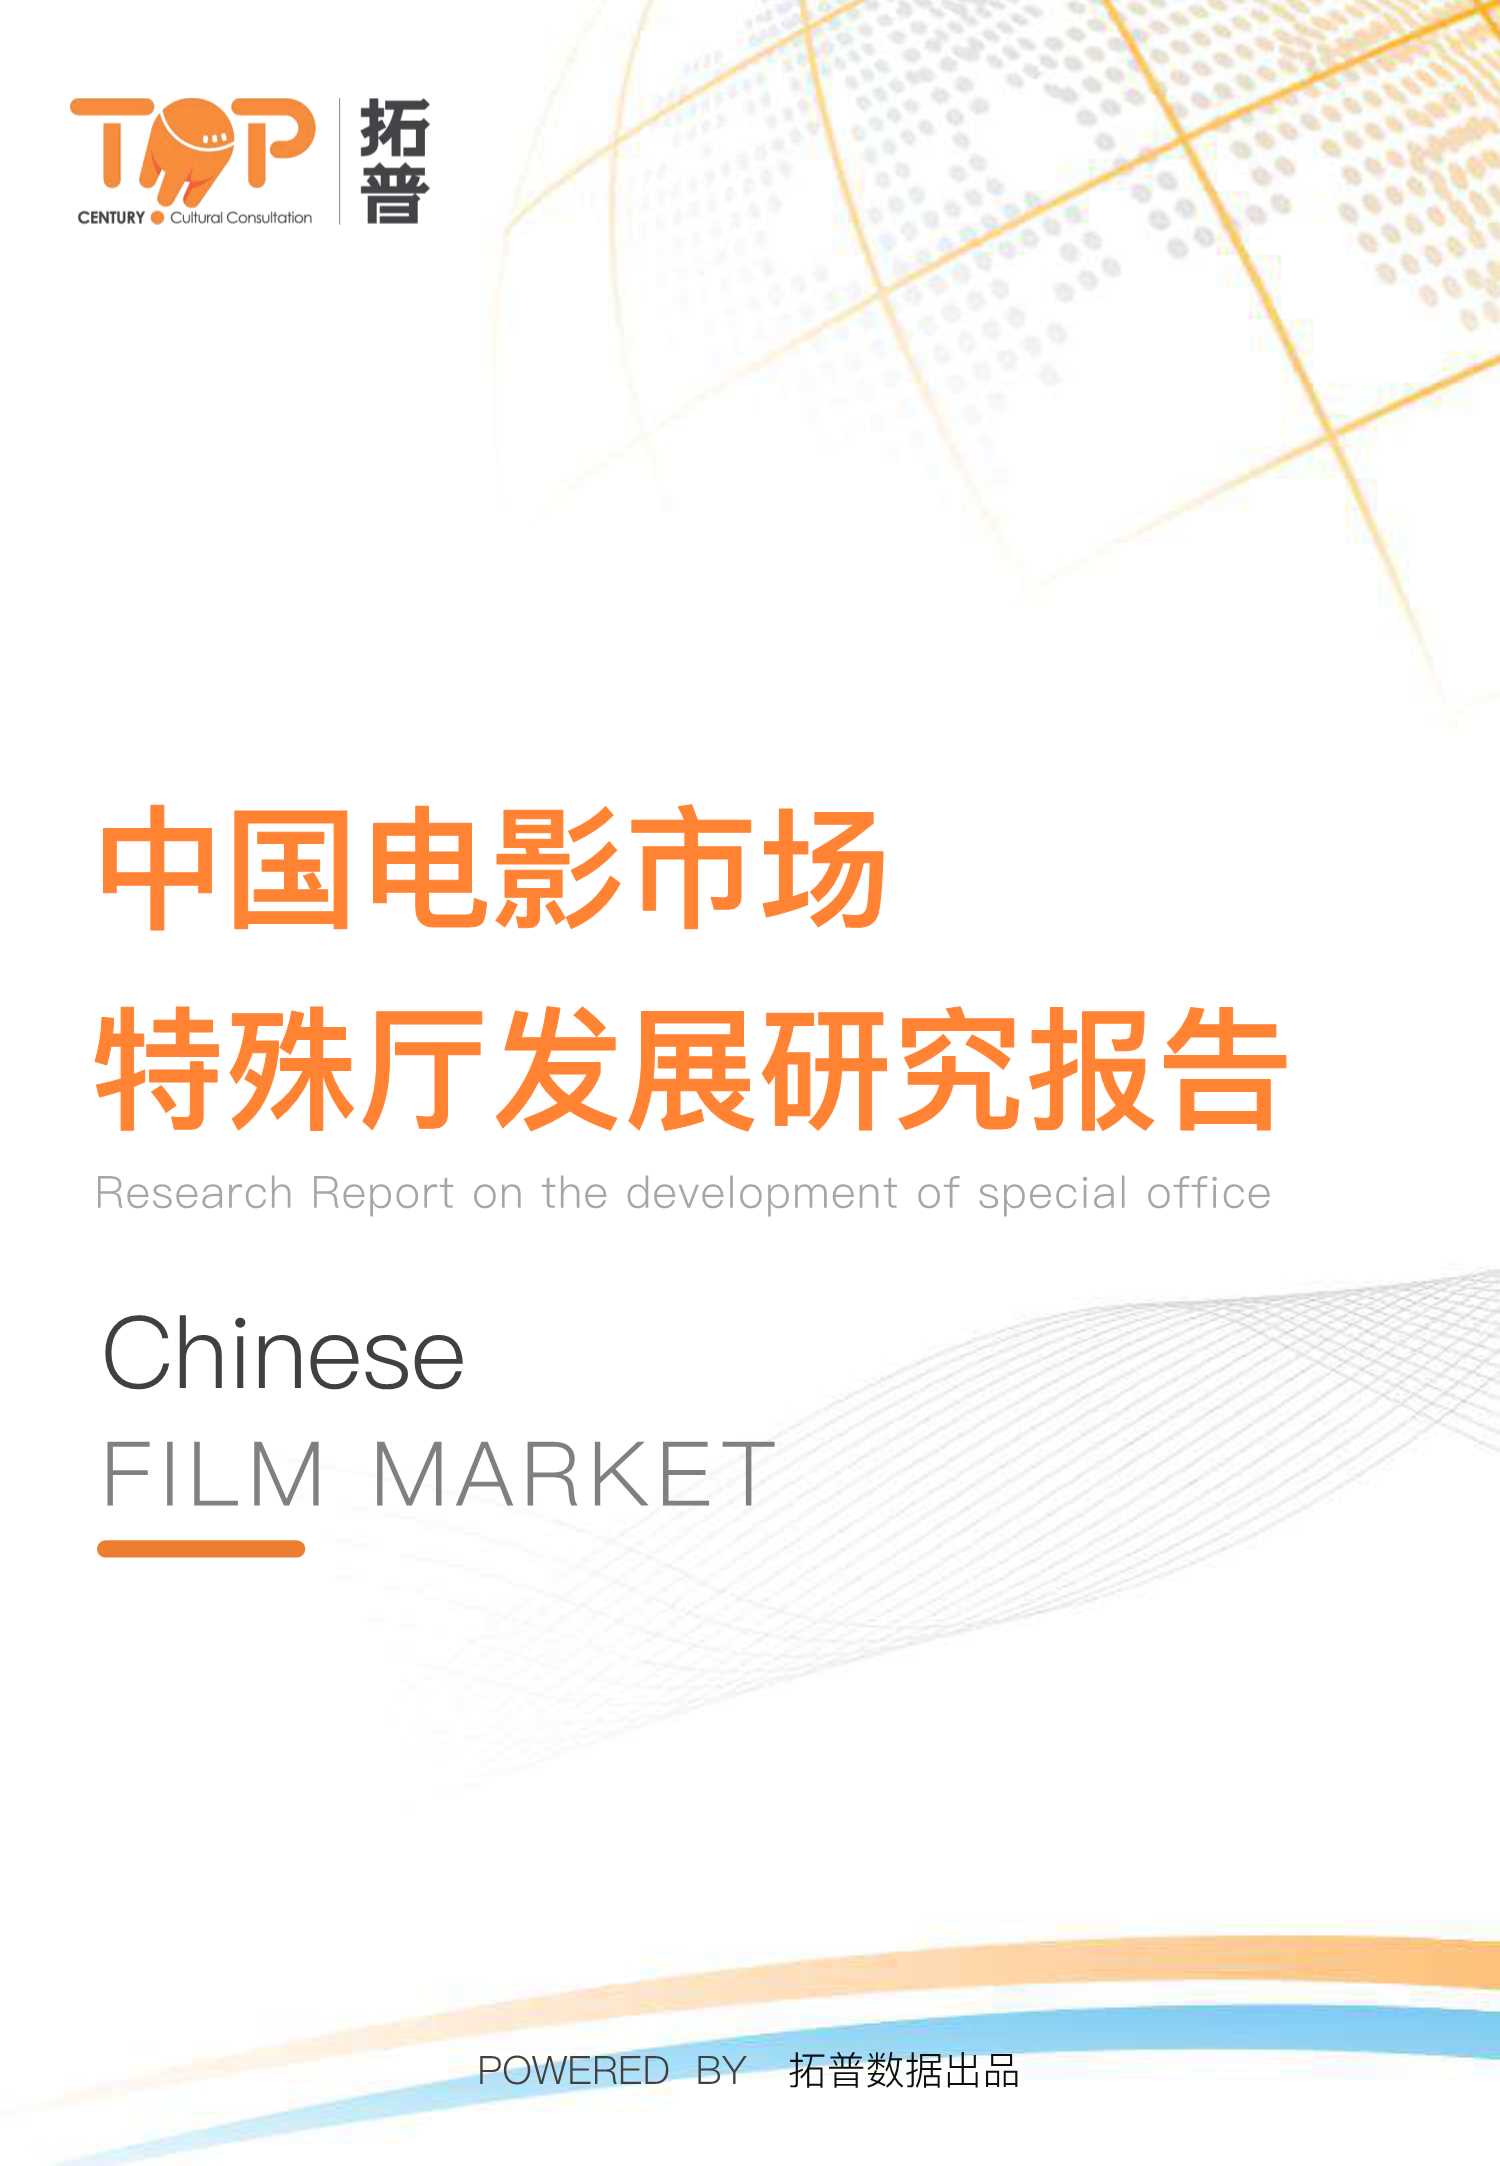 拓普数据-中国电影市场特殊厅发展研究报告-2021.11-58页